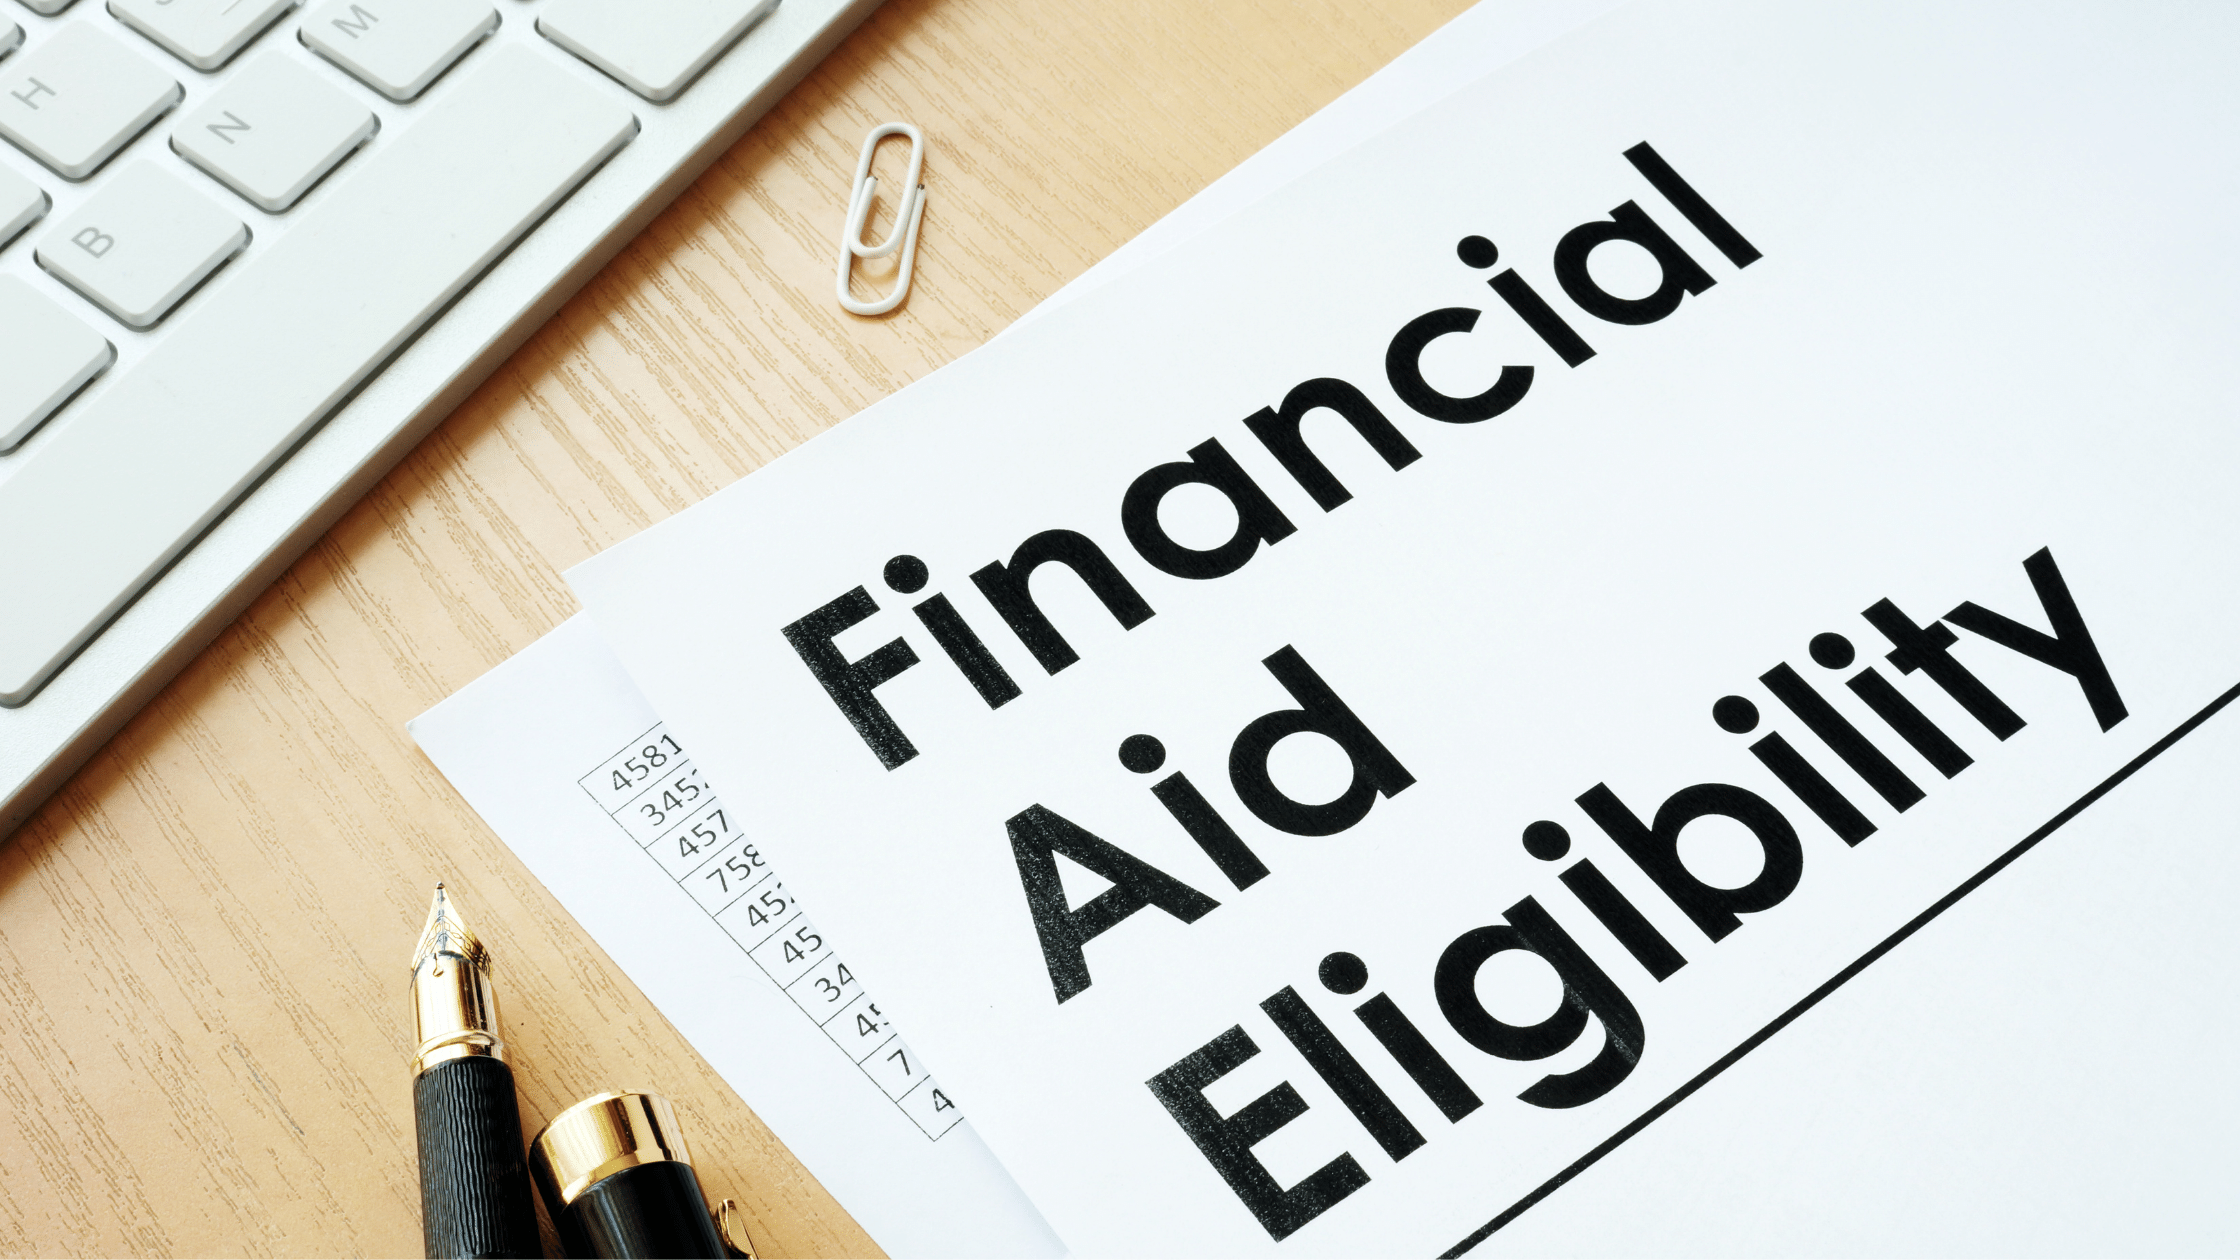 Financial Aid Eligibility